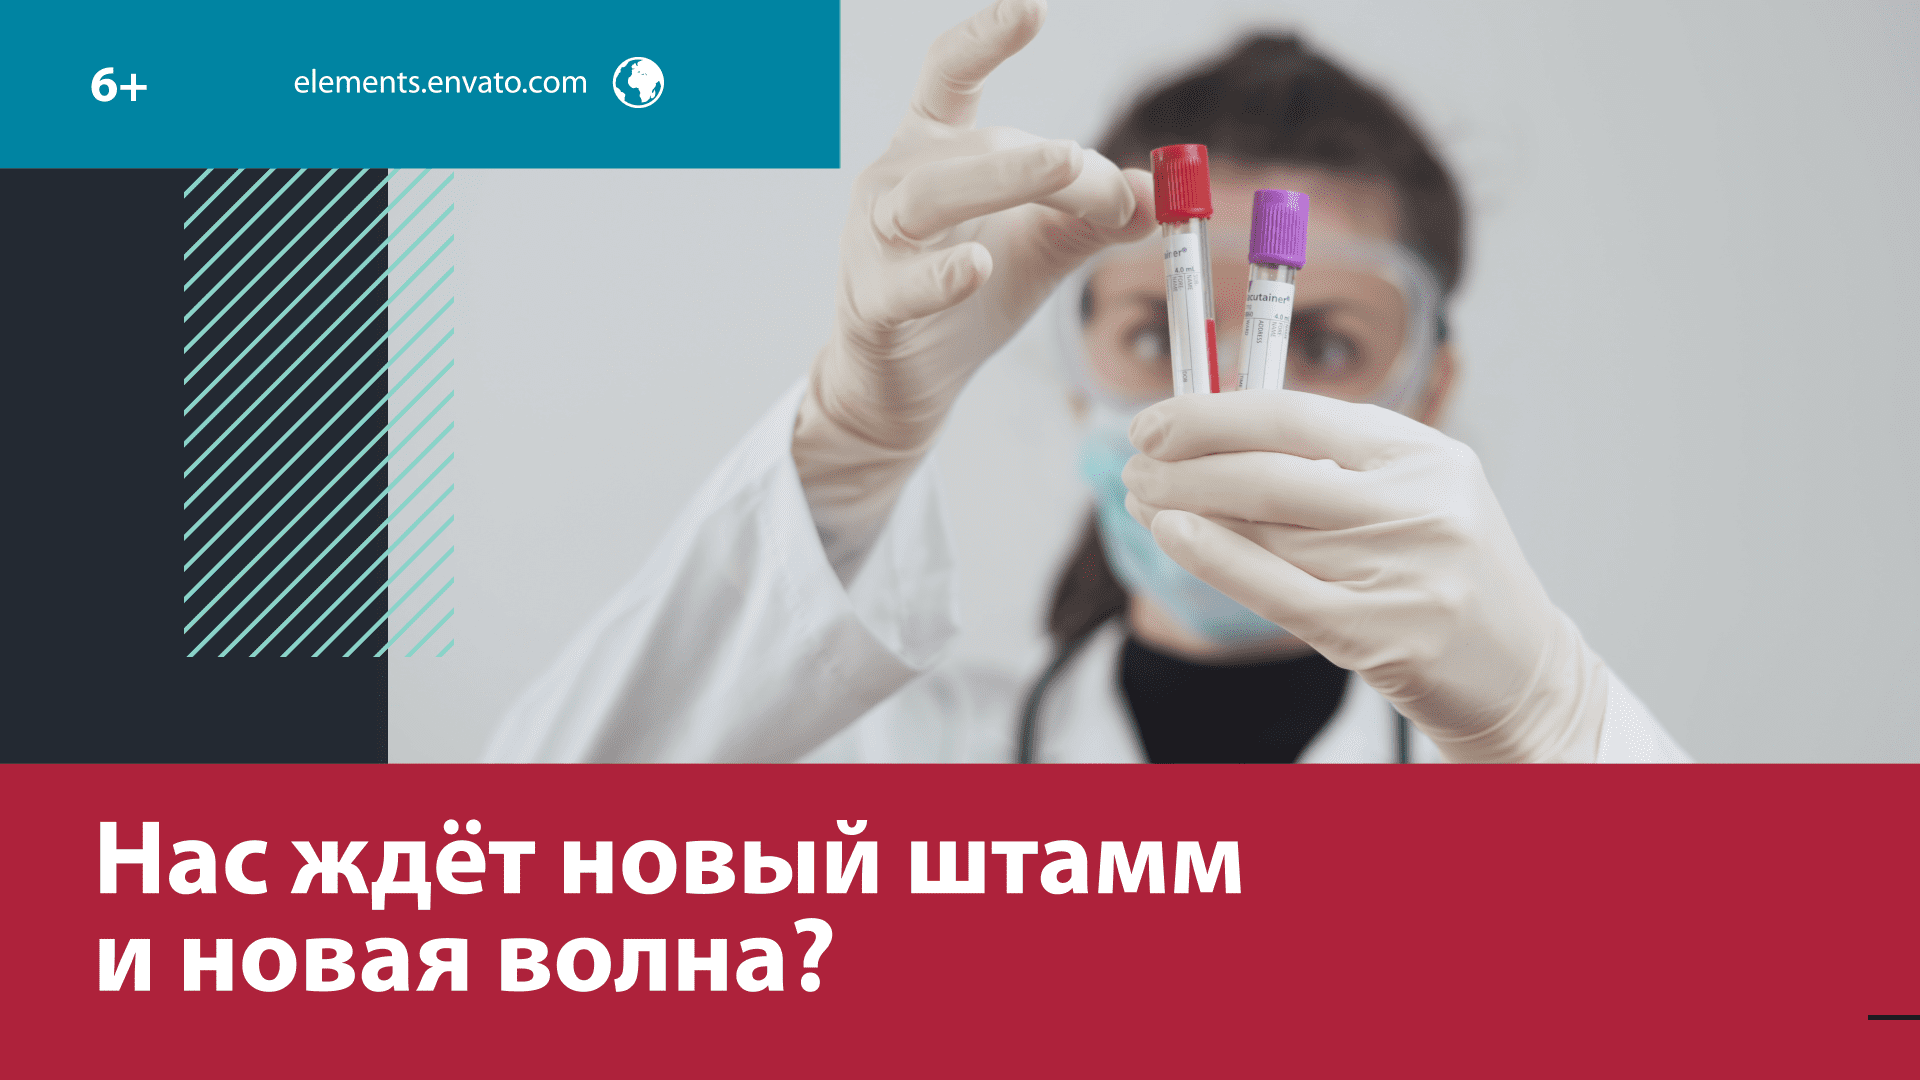 Нужно ли снова делать прививку от COVID? – Москва FM